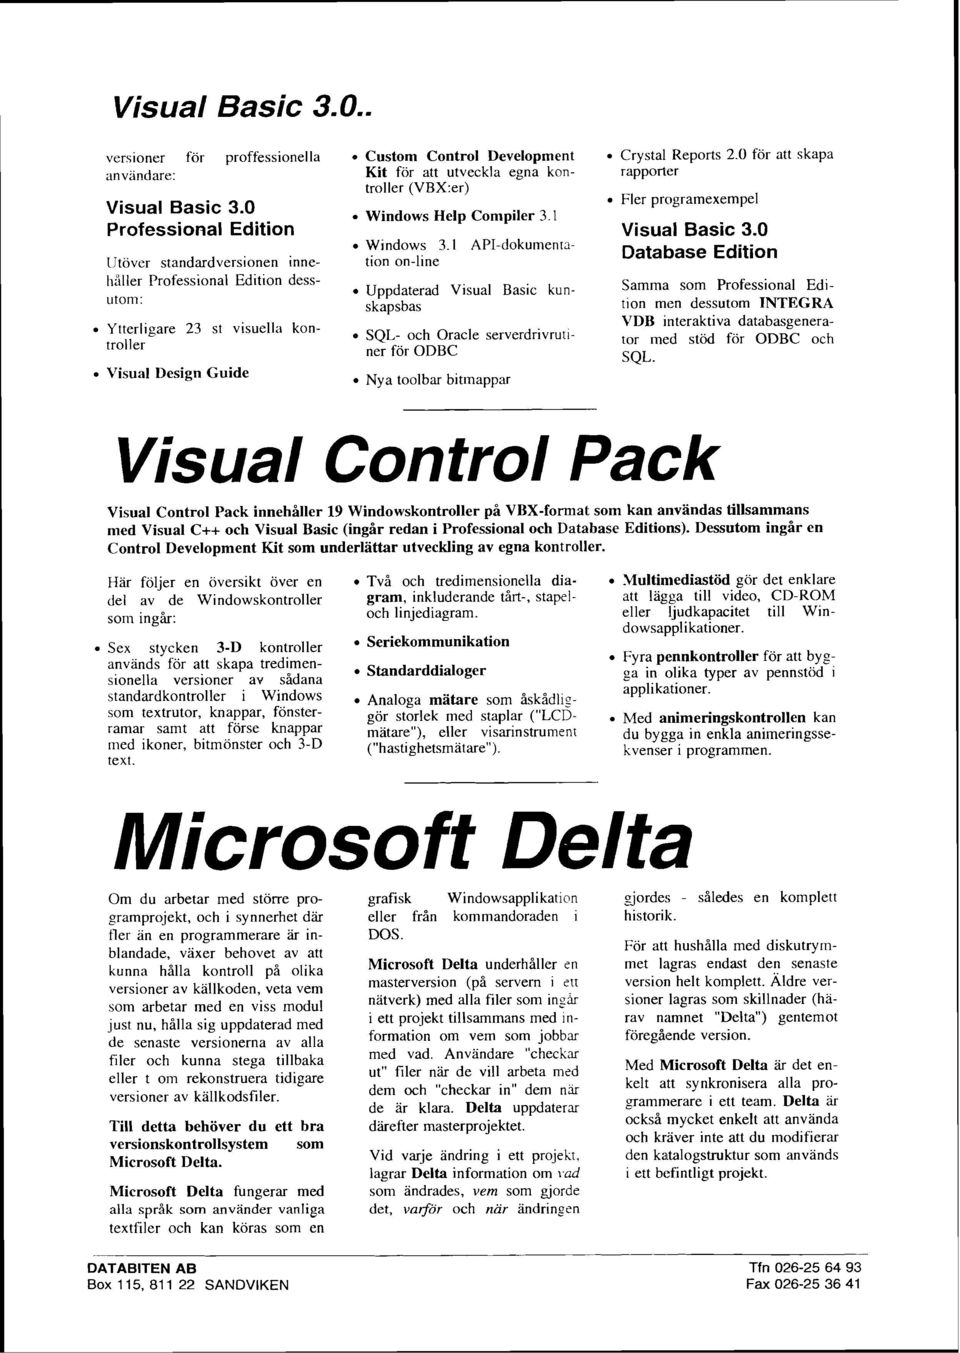 egna kontroller (VBX:er) Windows Help Compiler 3.1 Windows 3.